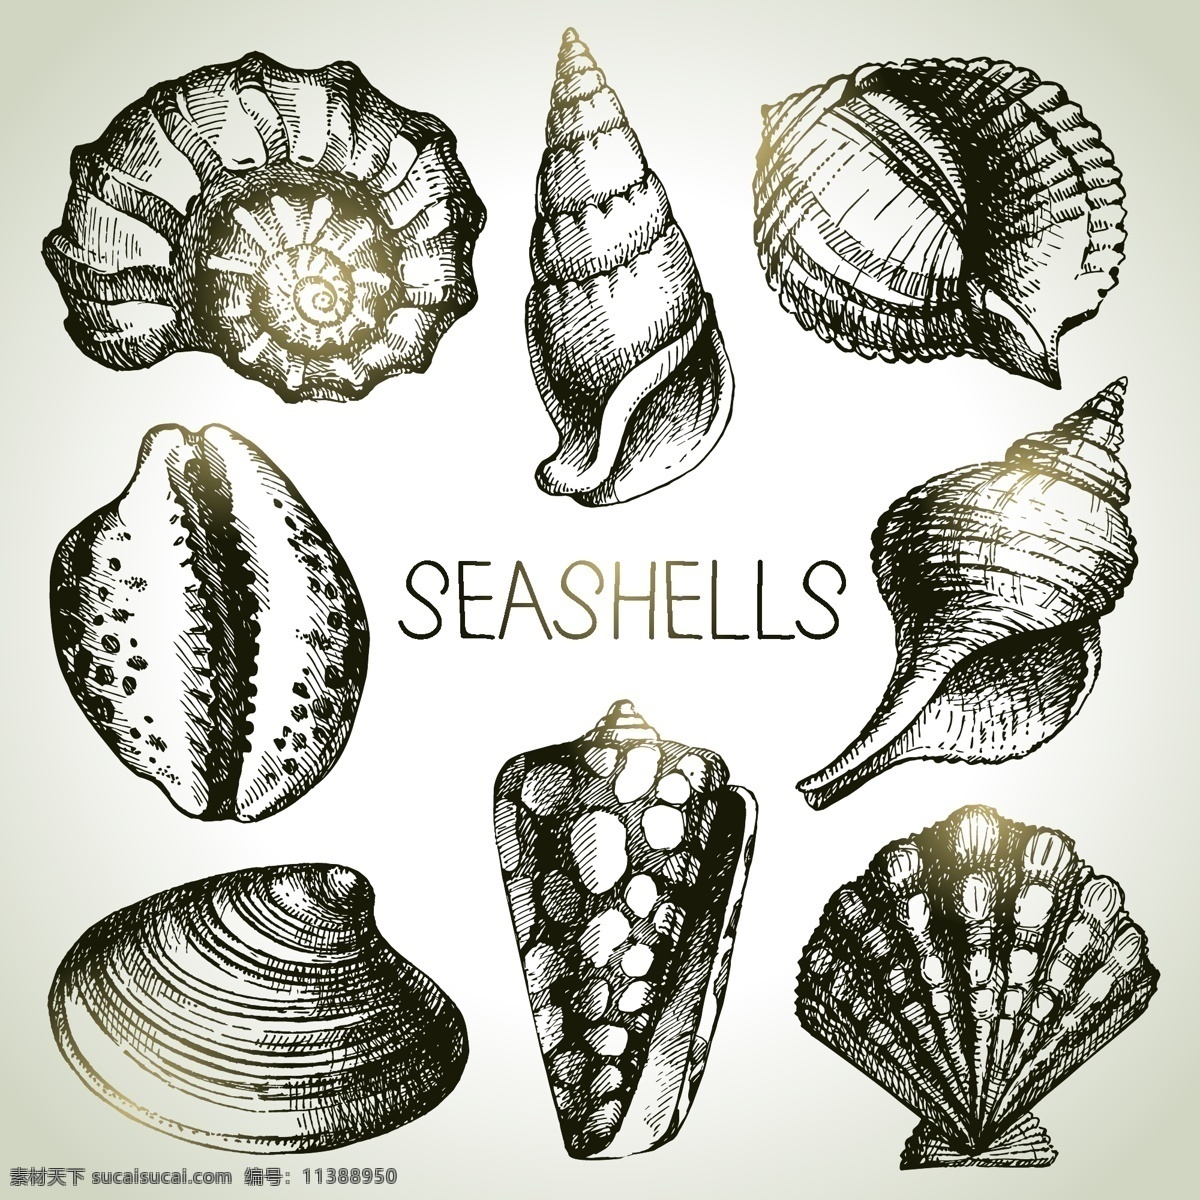 手绘贝壳 海螺 装饰品 贝壳 素描 线描 海星 海洋生物 美术绘画 矢量 生物世界